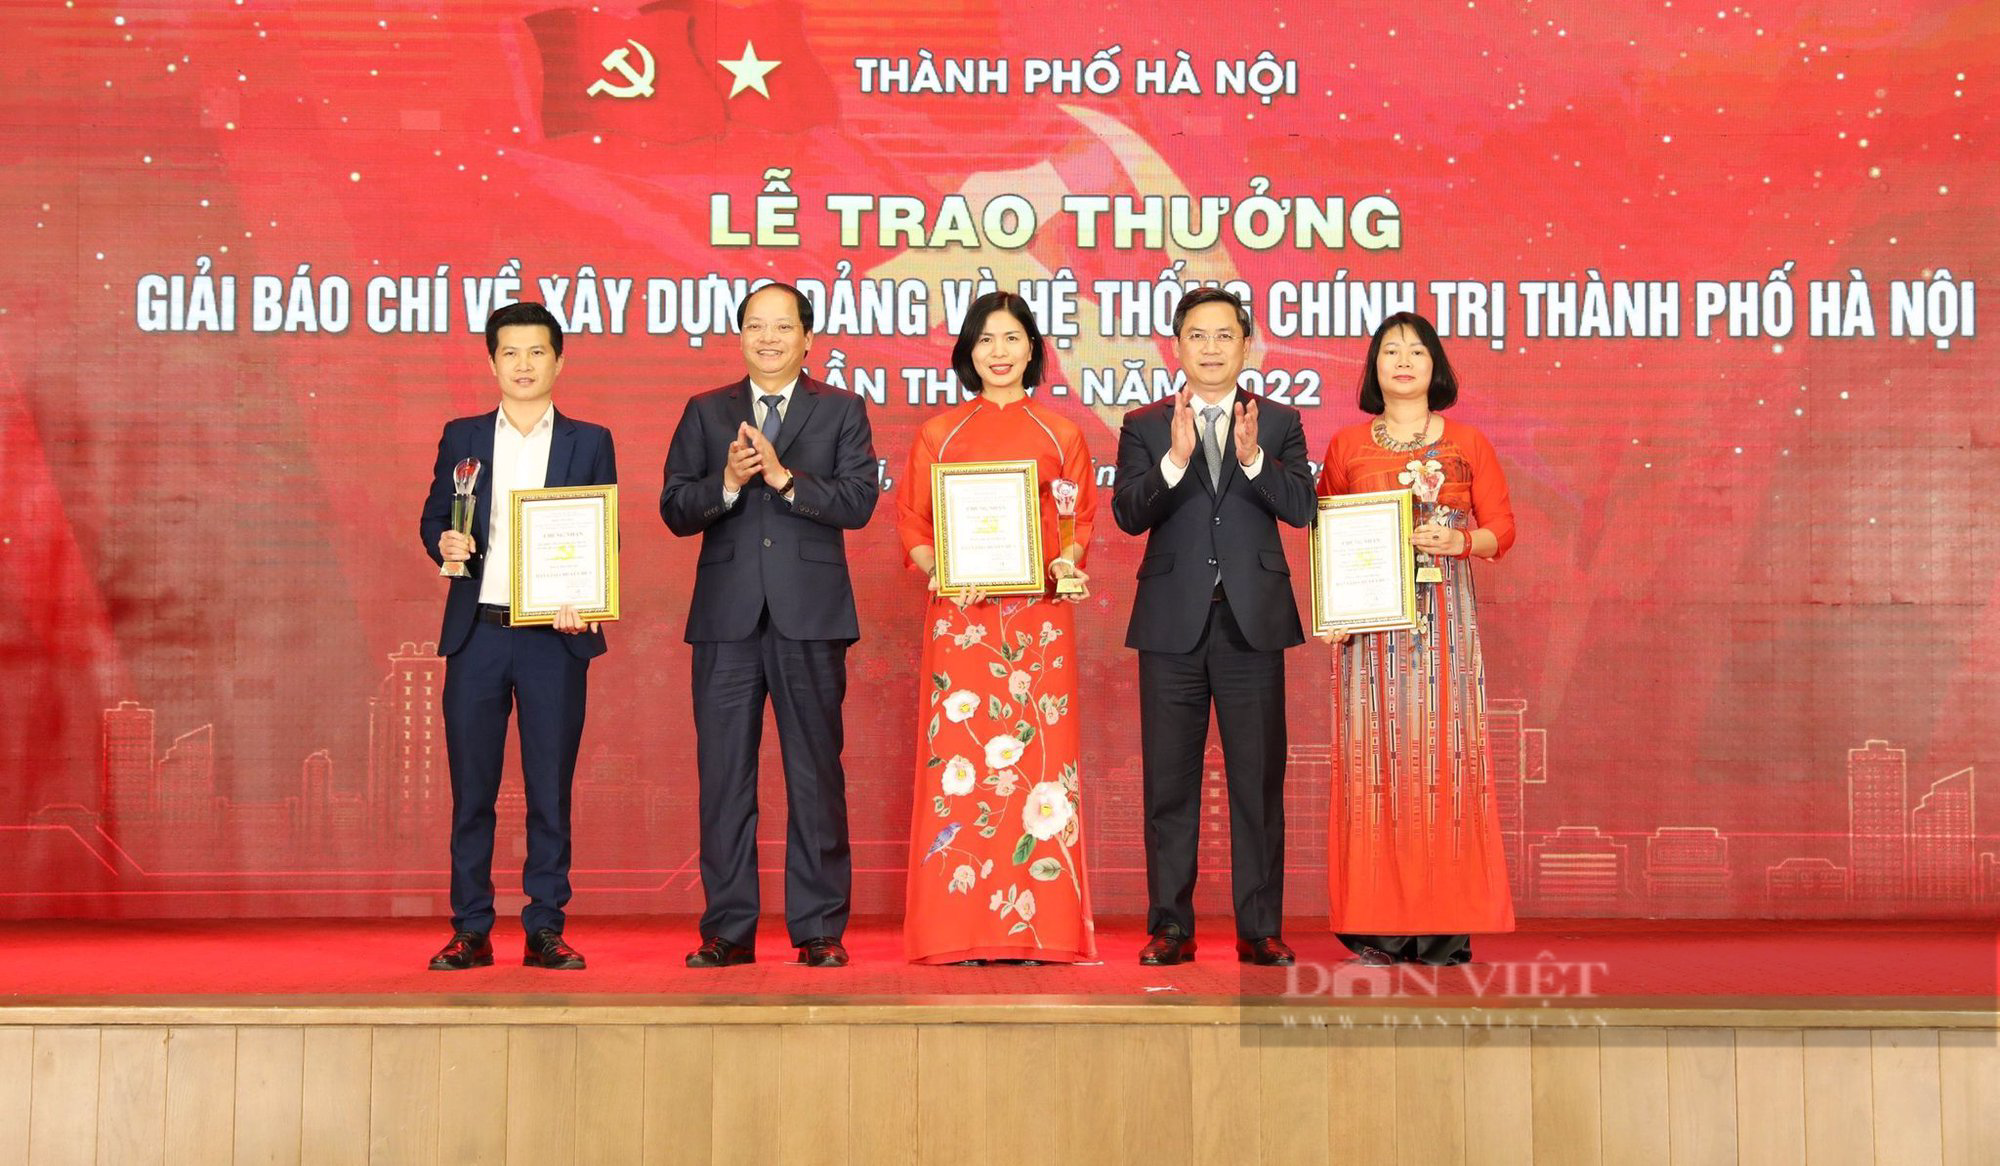 Báo Dân Việt đoạt giải giải báo chí về xây dựng Đảng và hệ thống chính trị Hà Nội - Ảnh 1.